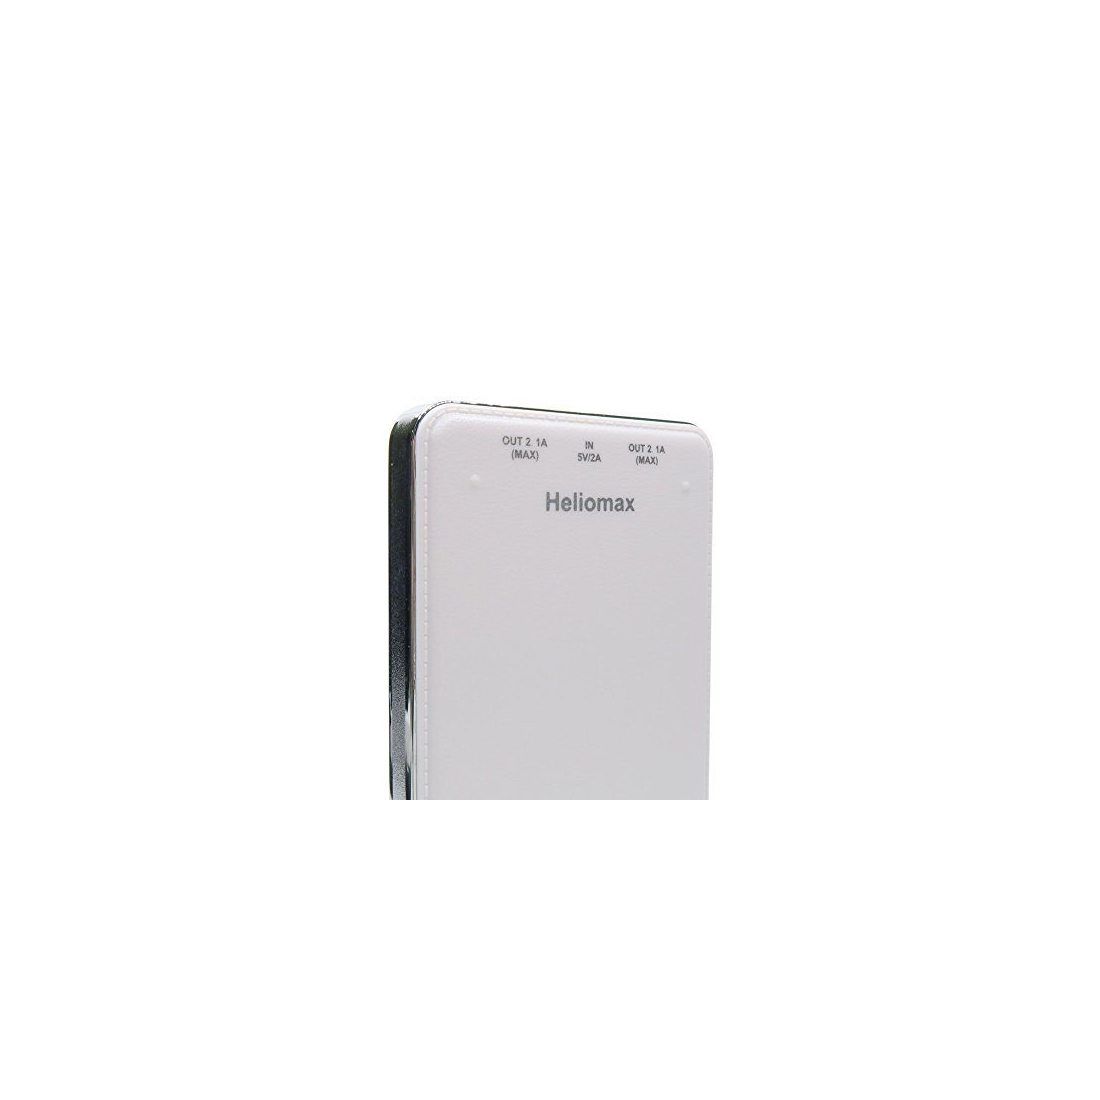 Heliomax Blanc 10000mah batterie externe 1A + 2.1A avec chargeur sans fil Qi induction pour Galaxy Note 8 Note 5 Galaxy S8 S8